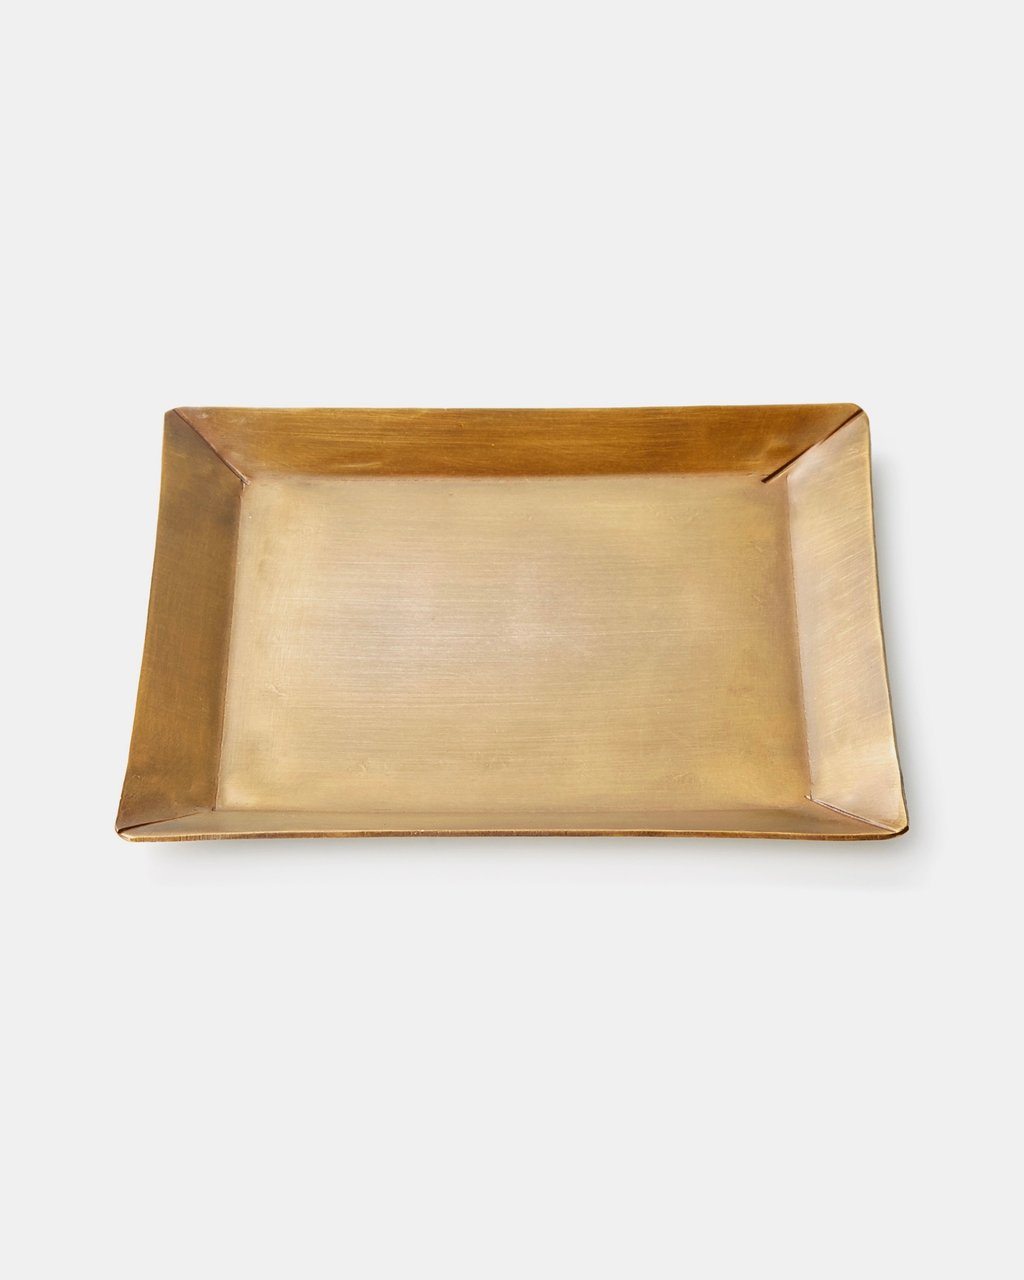 Fog Linen, Handmade Brass Rectangle Plate, One-Size- Placewares